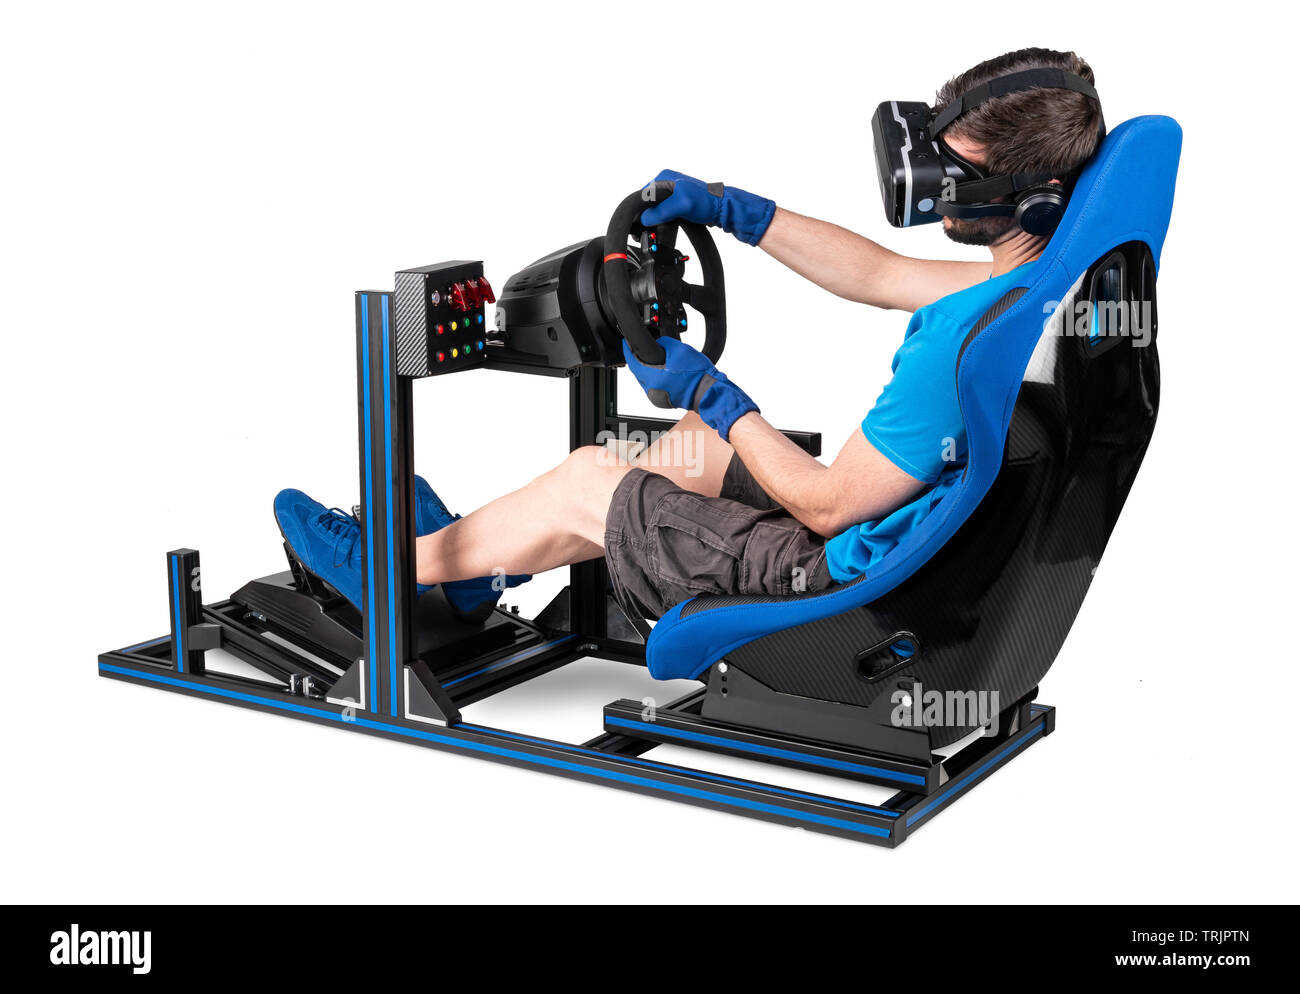 Gamer im blauen T-Shirt mit VR virtual reality Brillen Training am Simulator simracing Aluminium Rigg für video spiel racing. Motorsport auto Schalensitz st Stockfoto